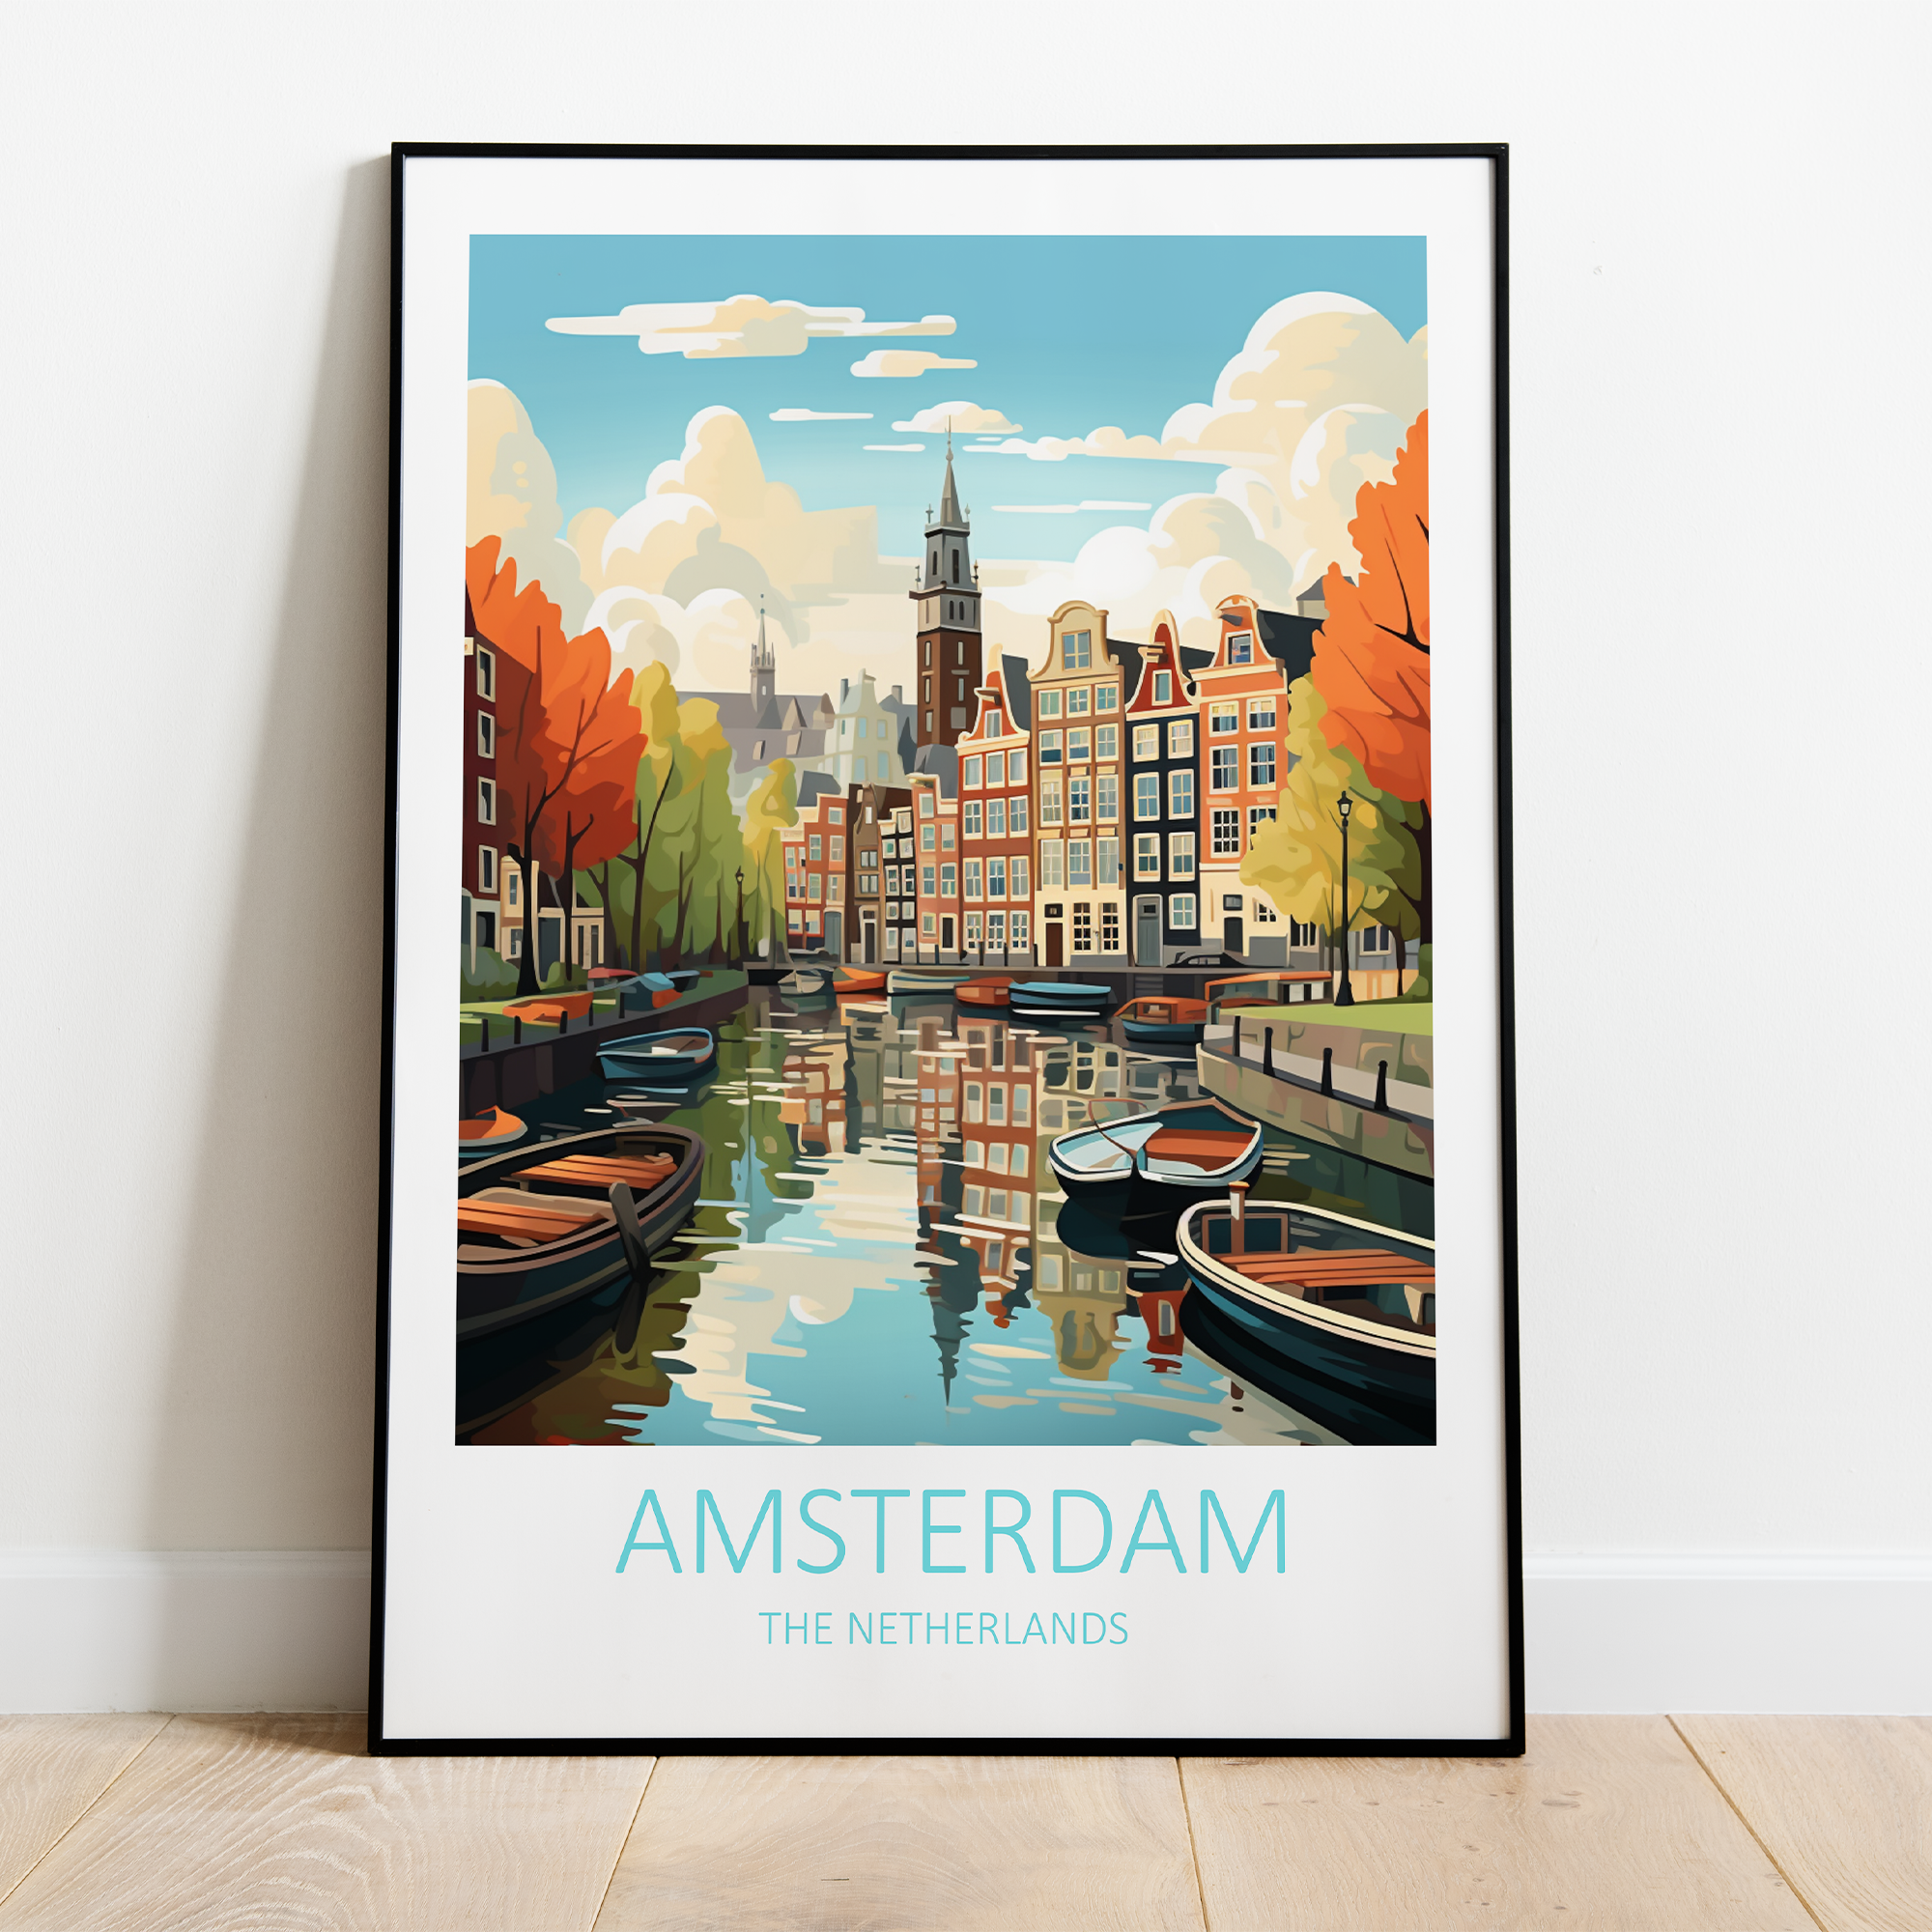 Billede af Amsterdam i Holland - plakat 3